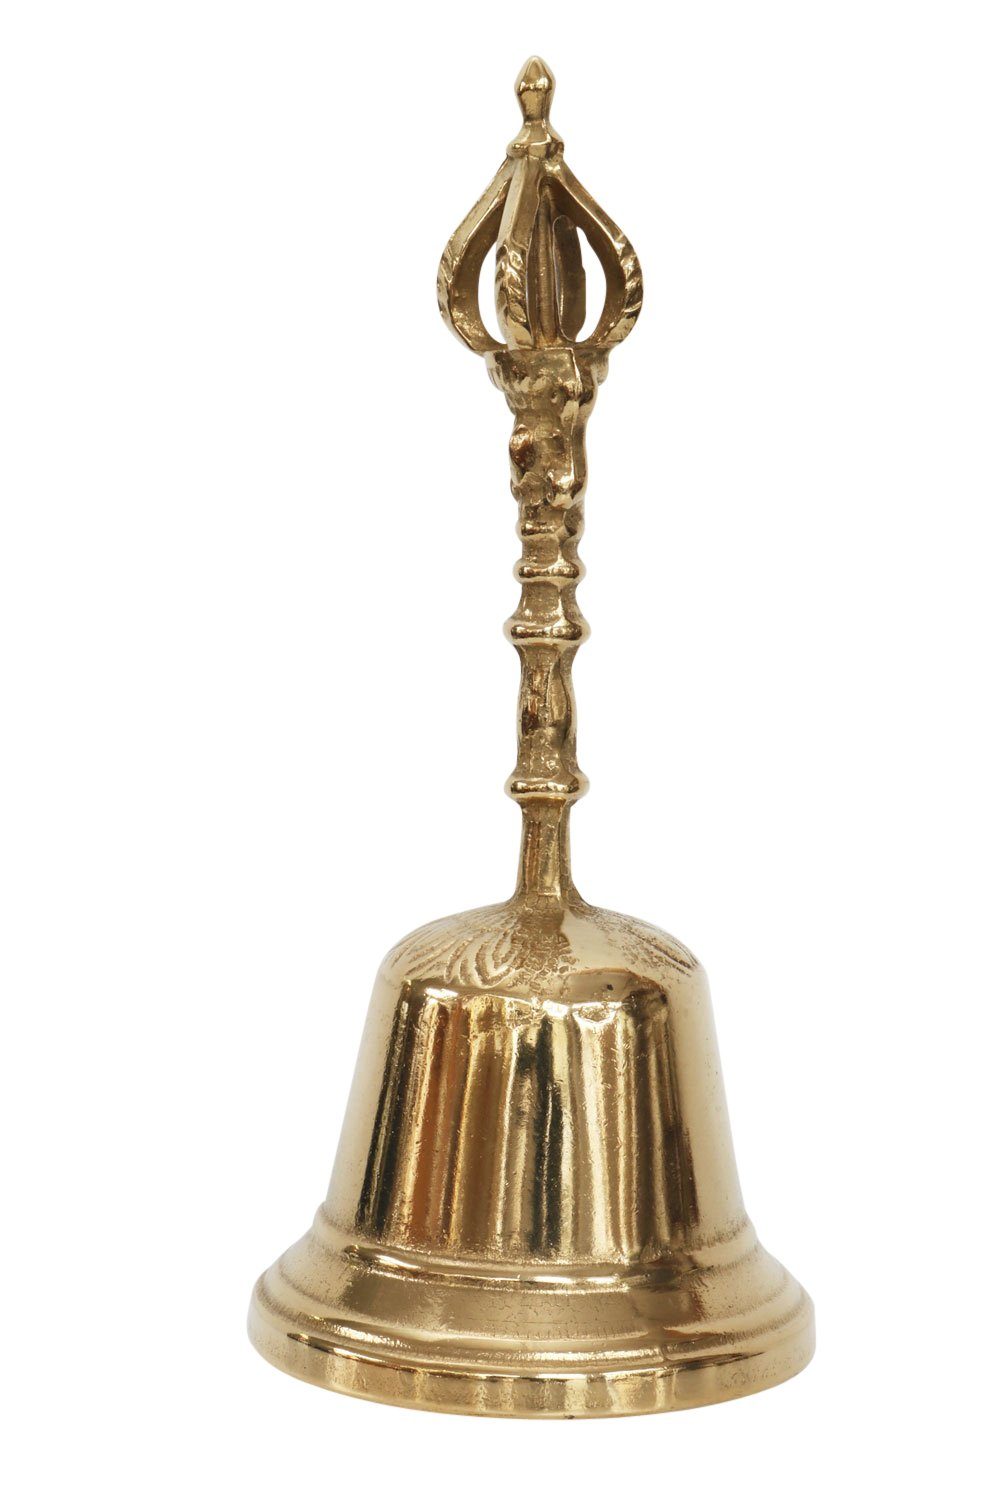 [Niedrigster Preis und höchste Qualität] Aubaho Dekoobjekt Tischglocke 20cm Schulglocke Antik-Stil Messin Glocke Krone Handglocke